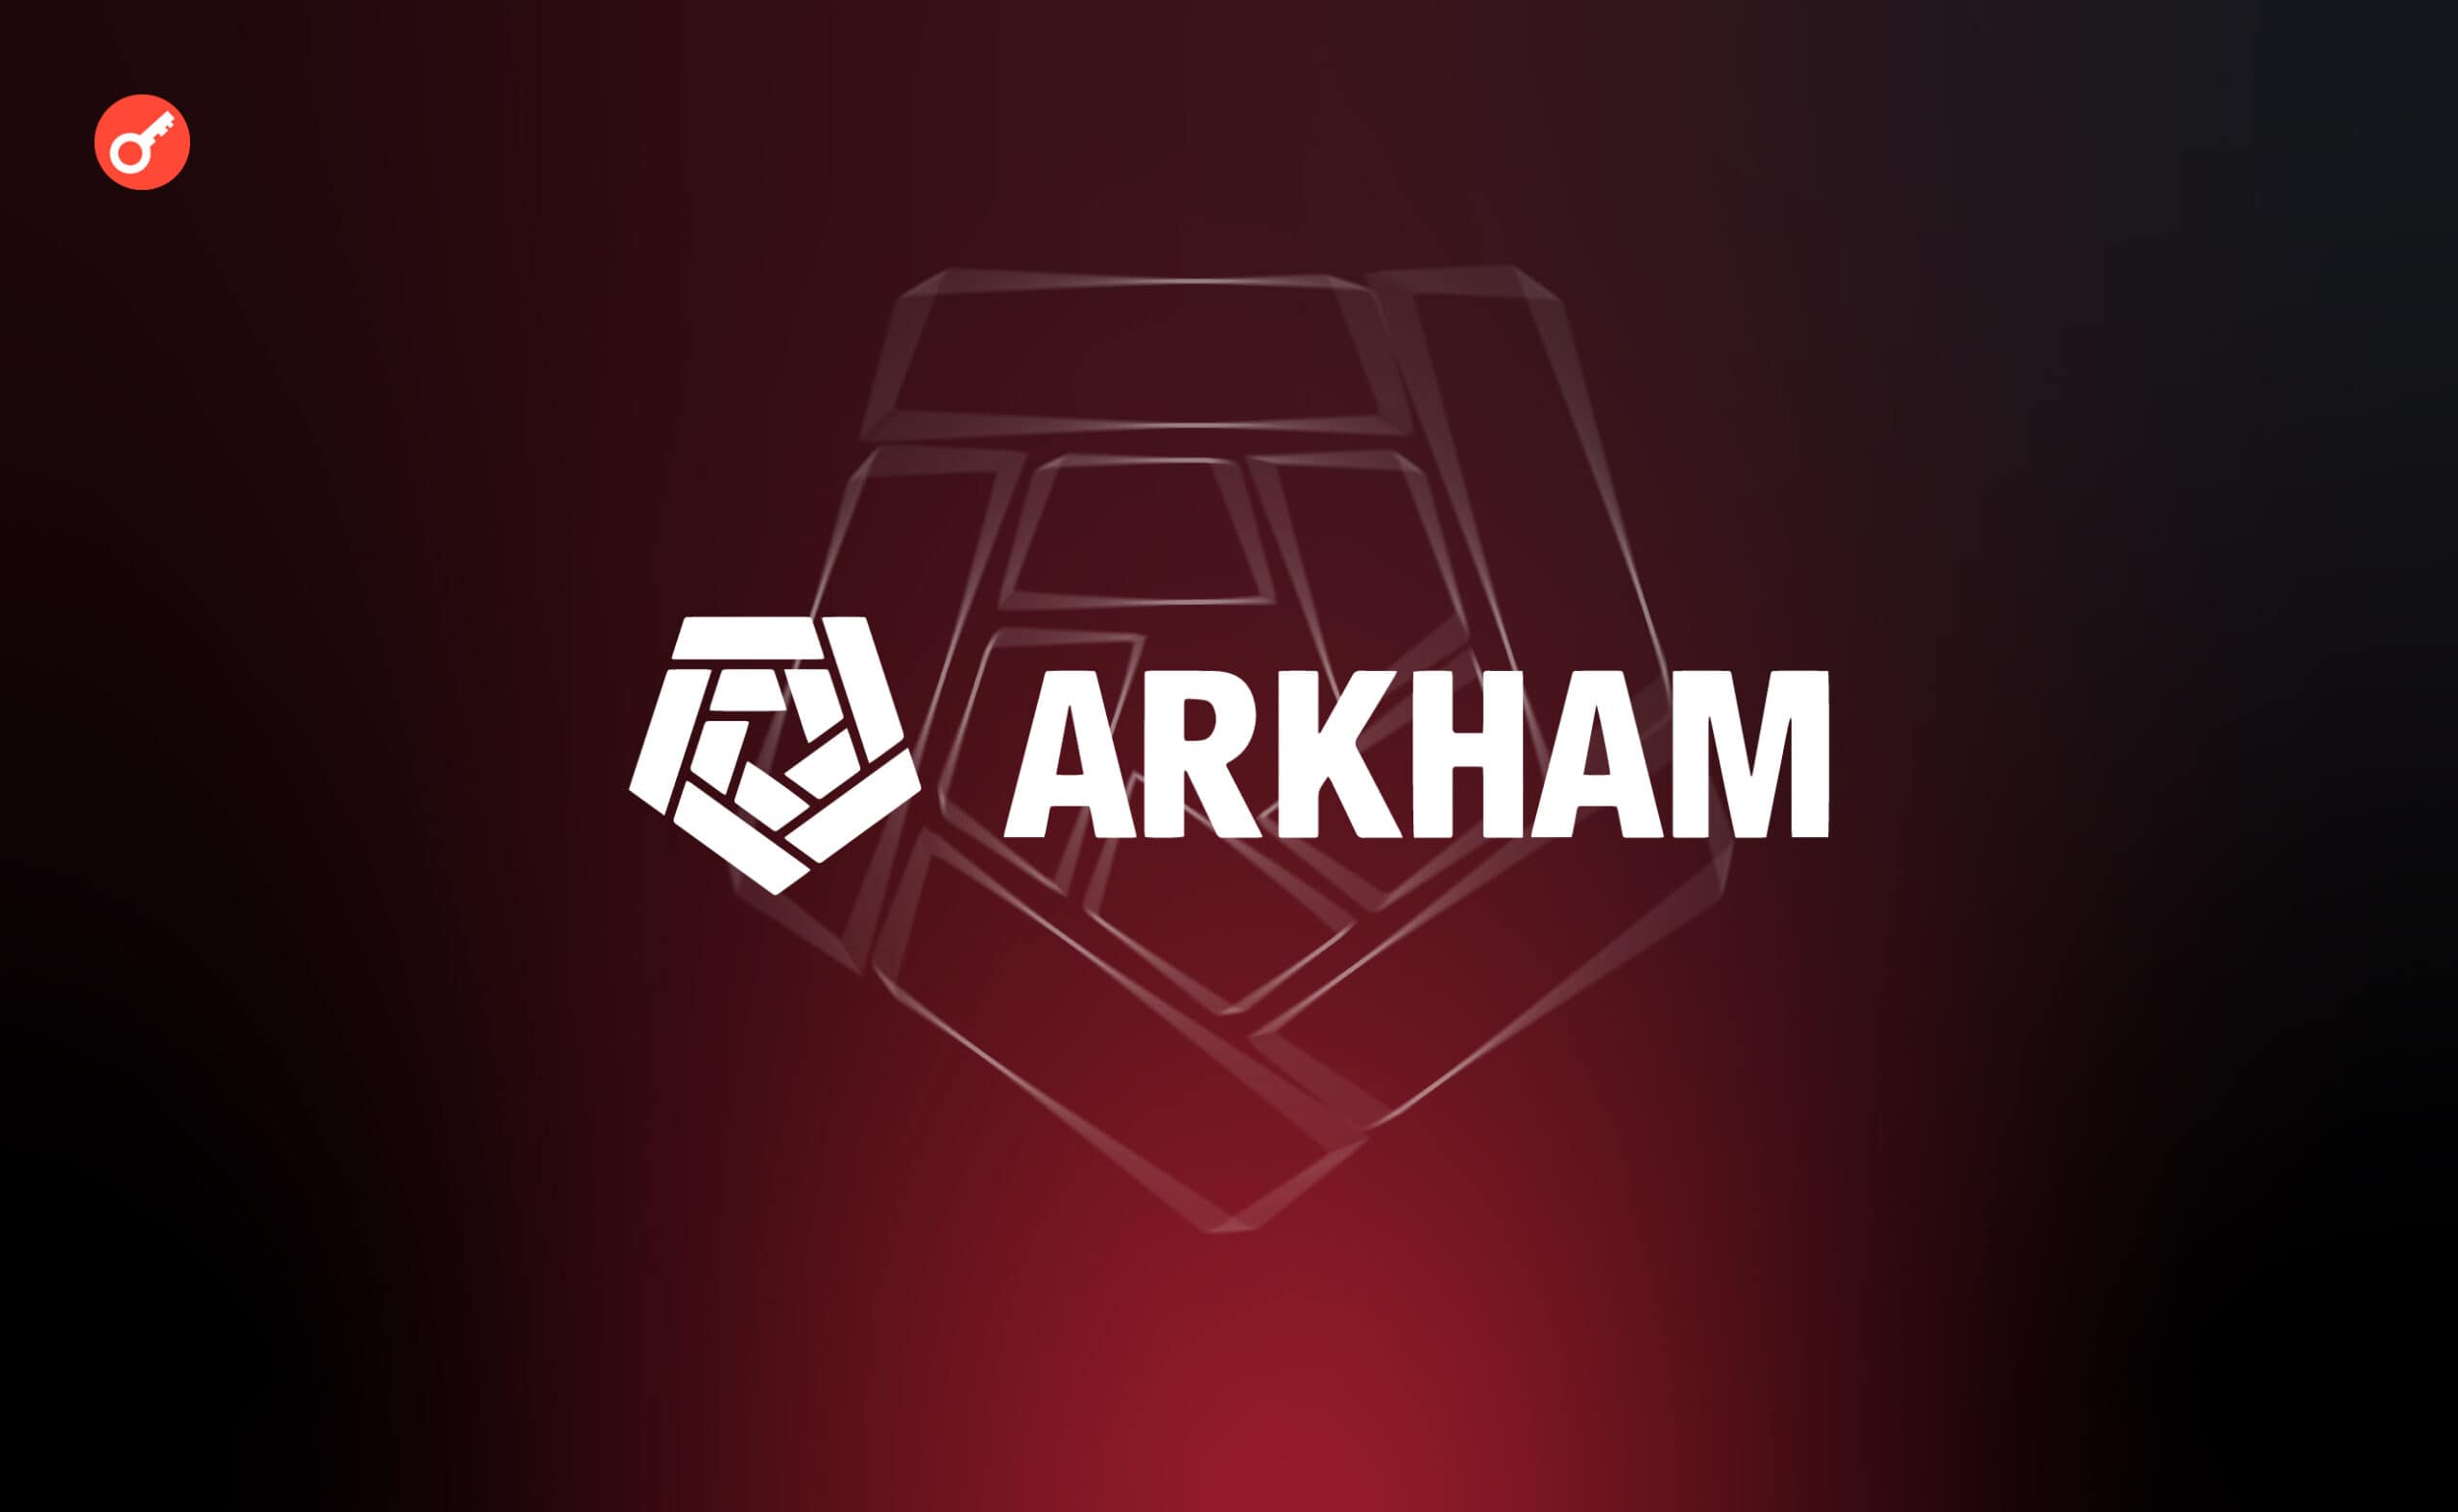 Arkham нашла десятки кошельков с зависшими на блокчейн-мостах миллионами долларов. Заглавный коллаж новости.